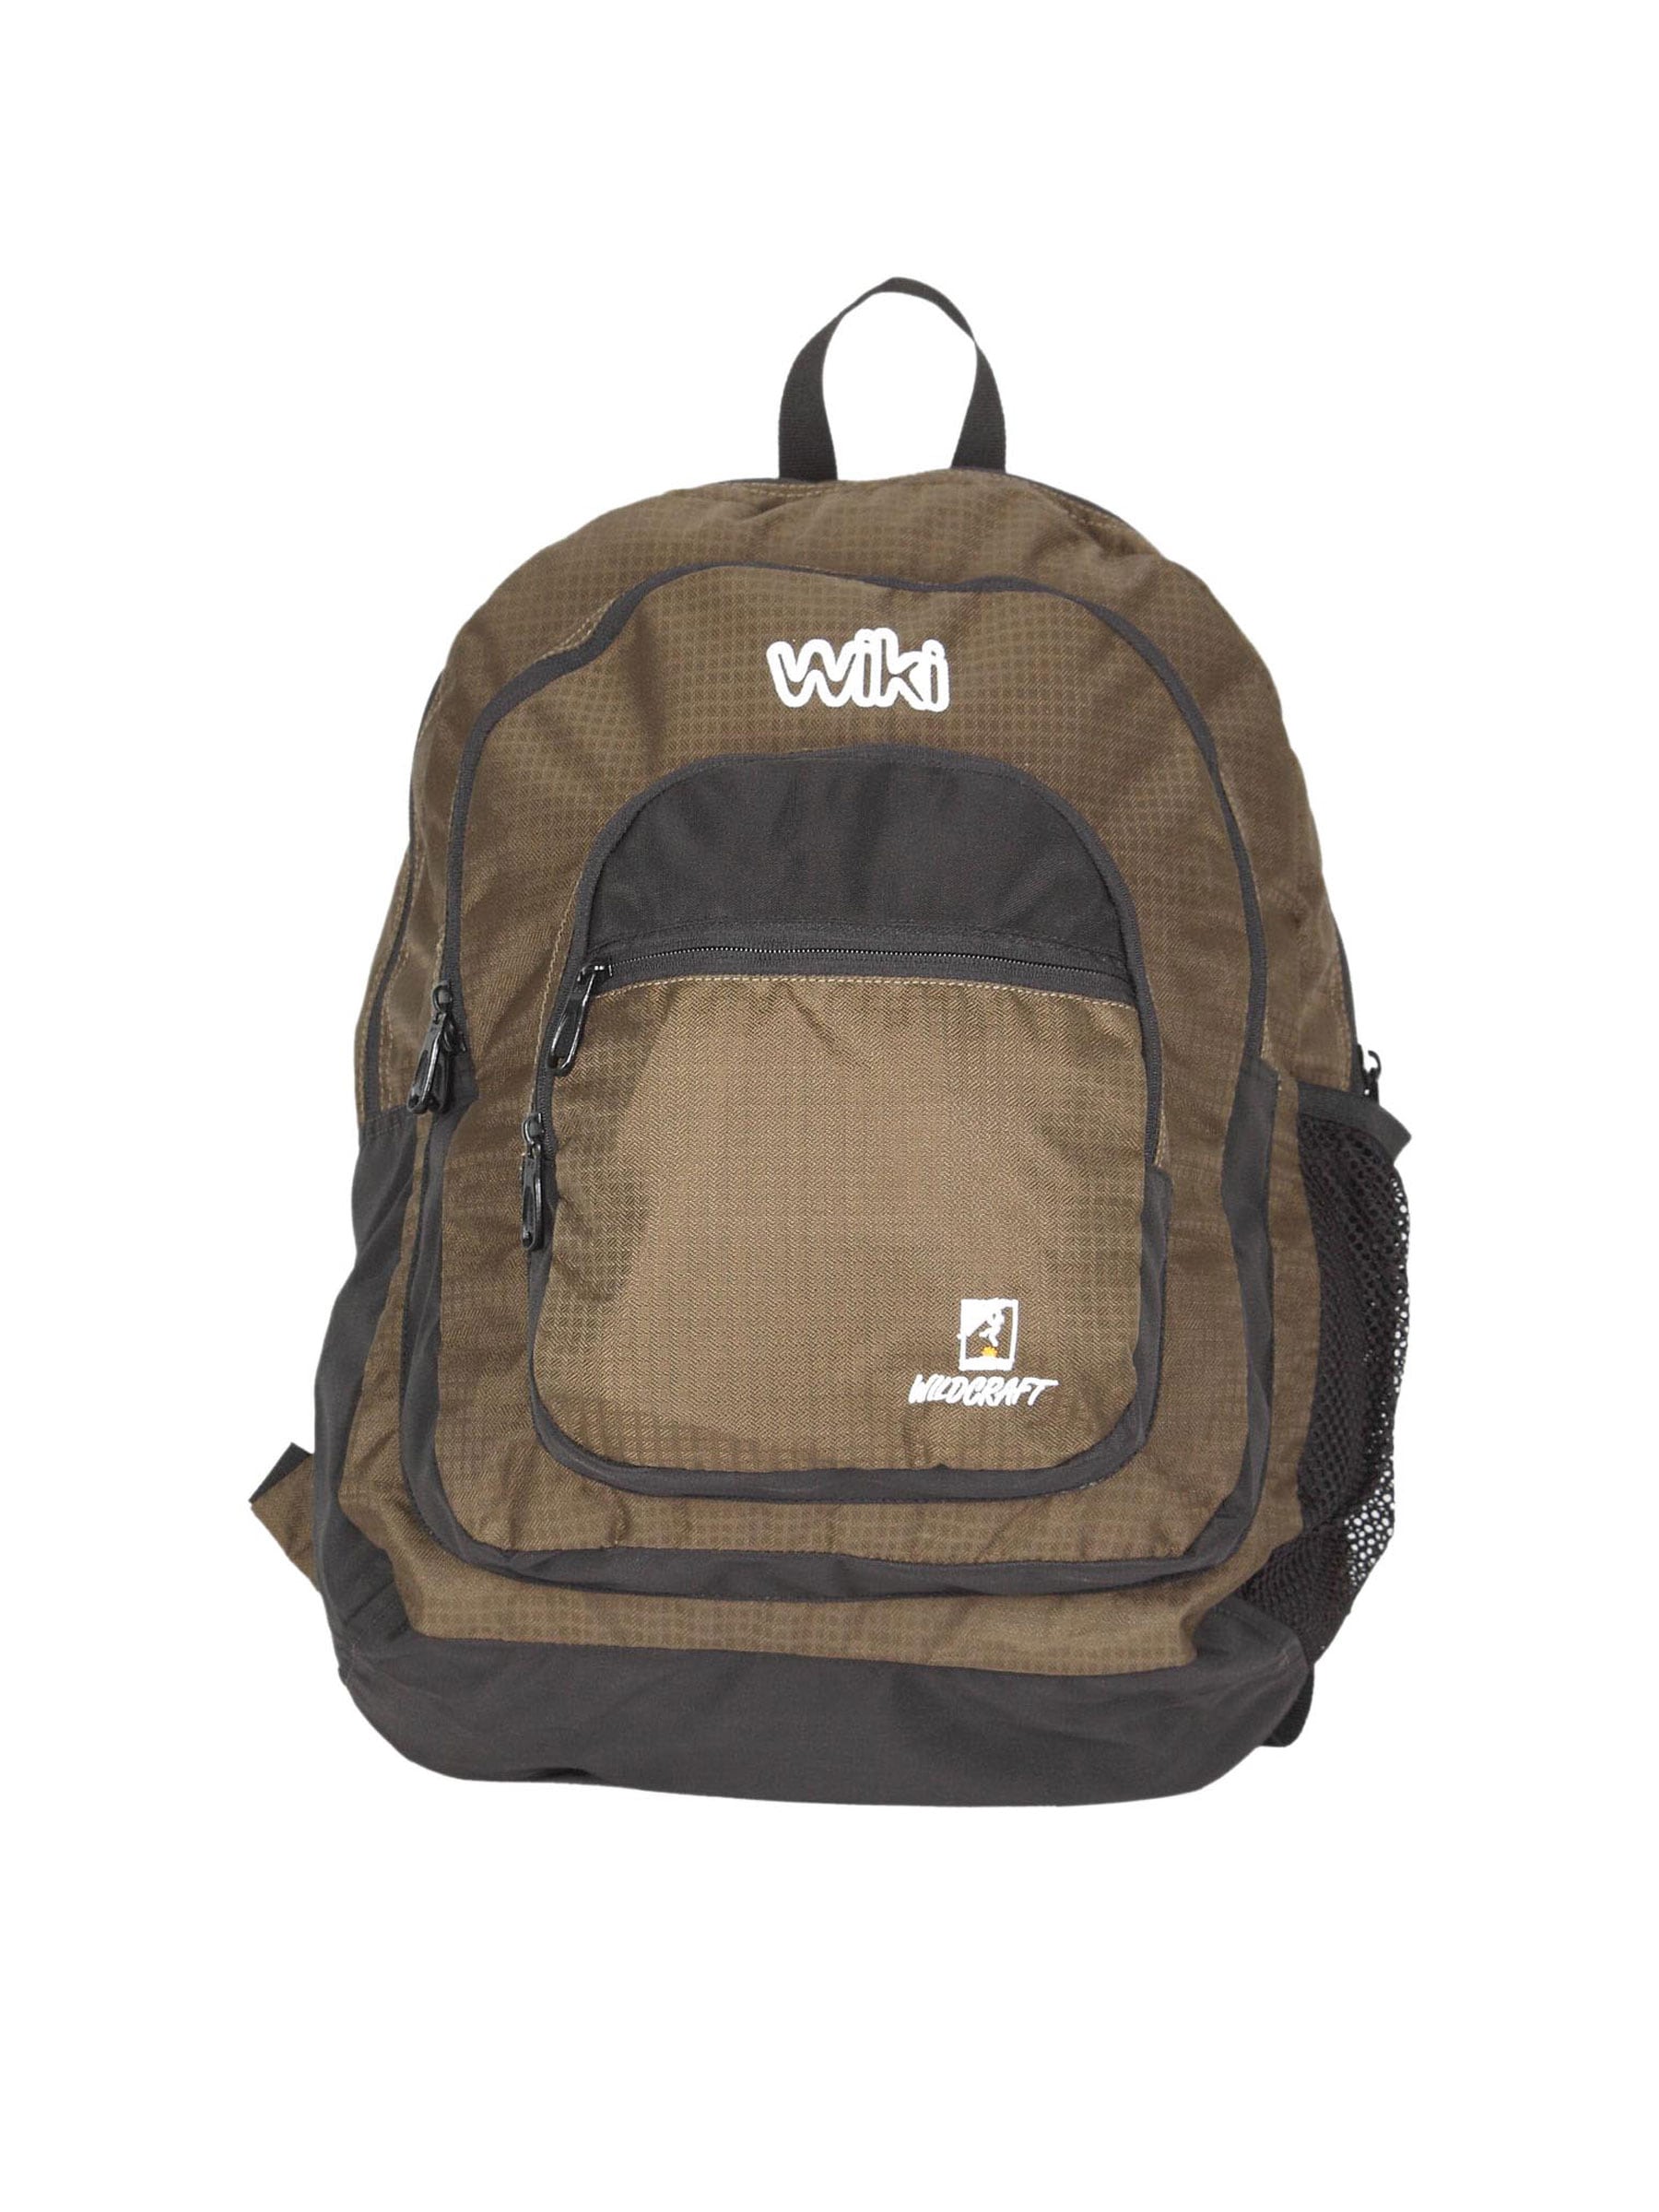 Wildcraft Unisex Brown & Black Backpack